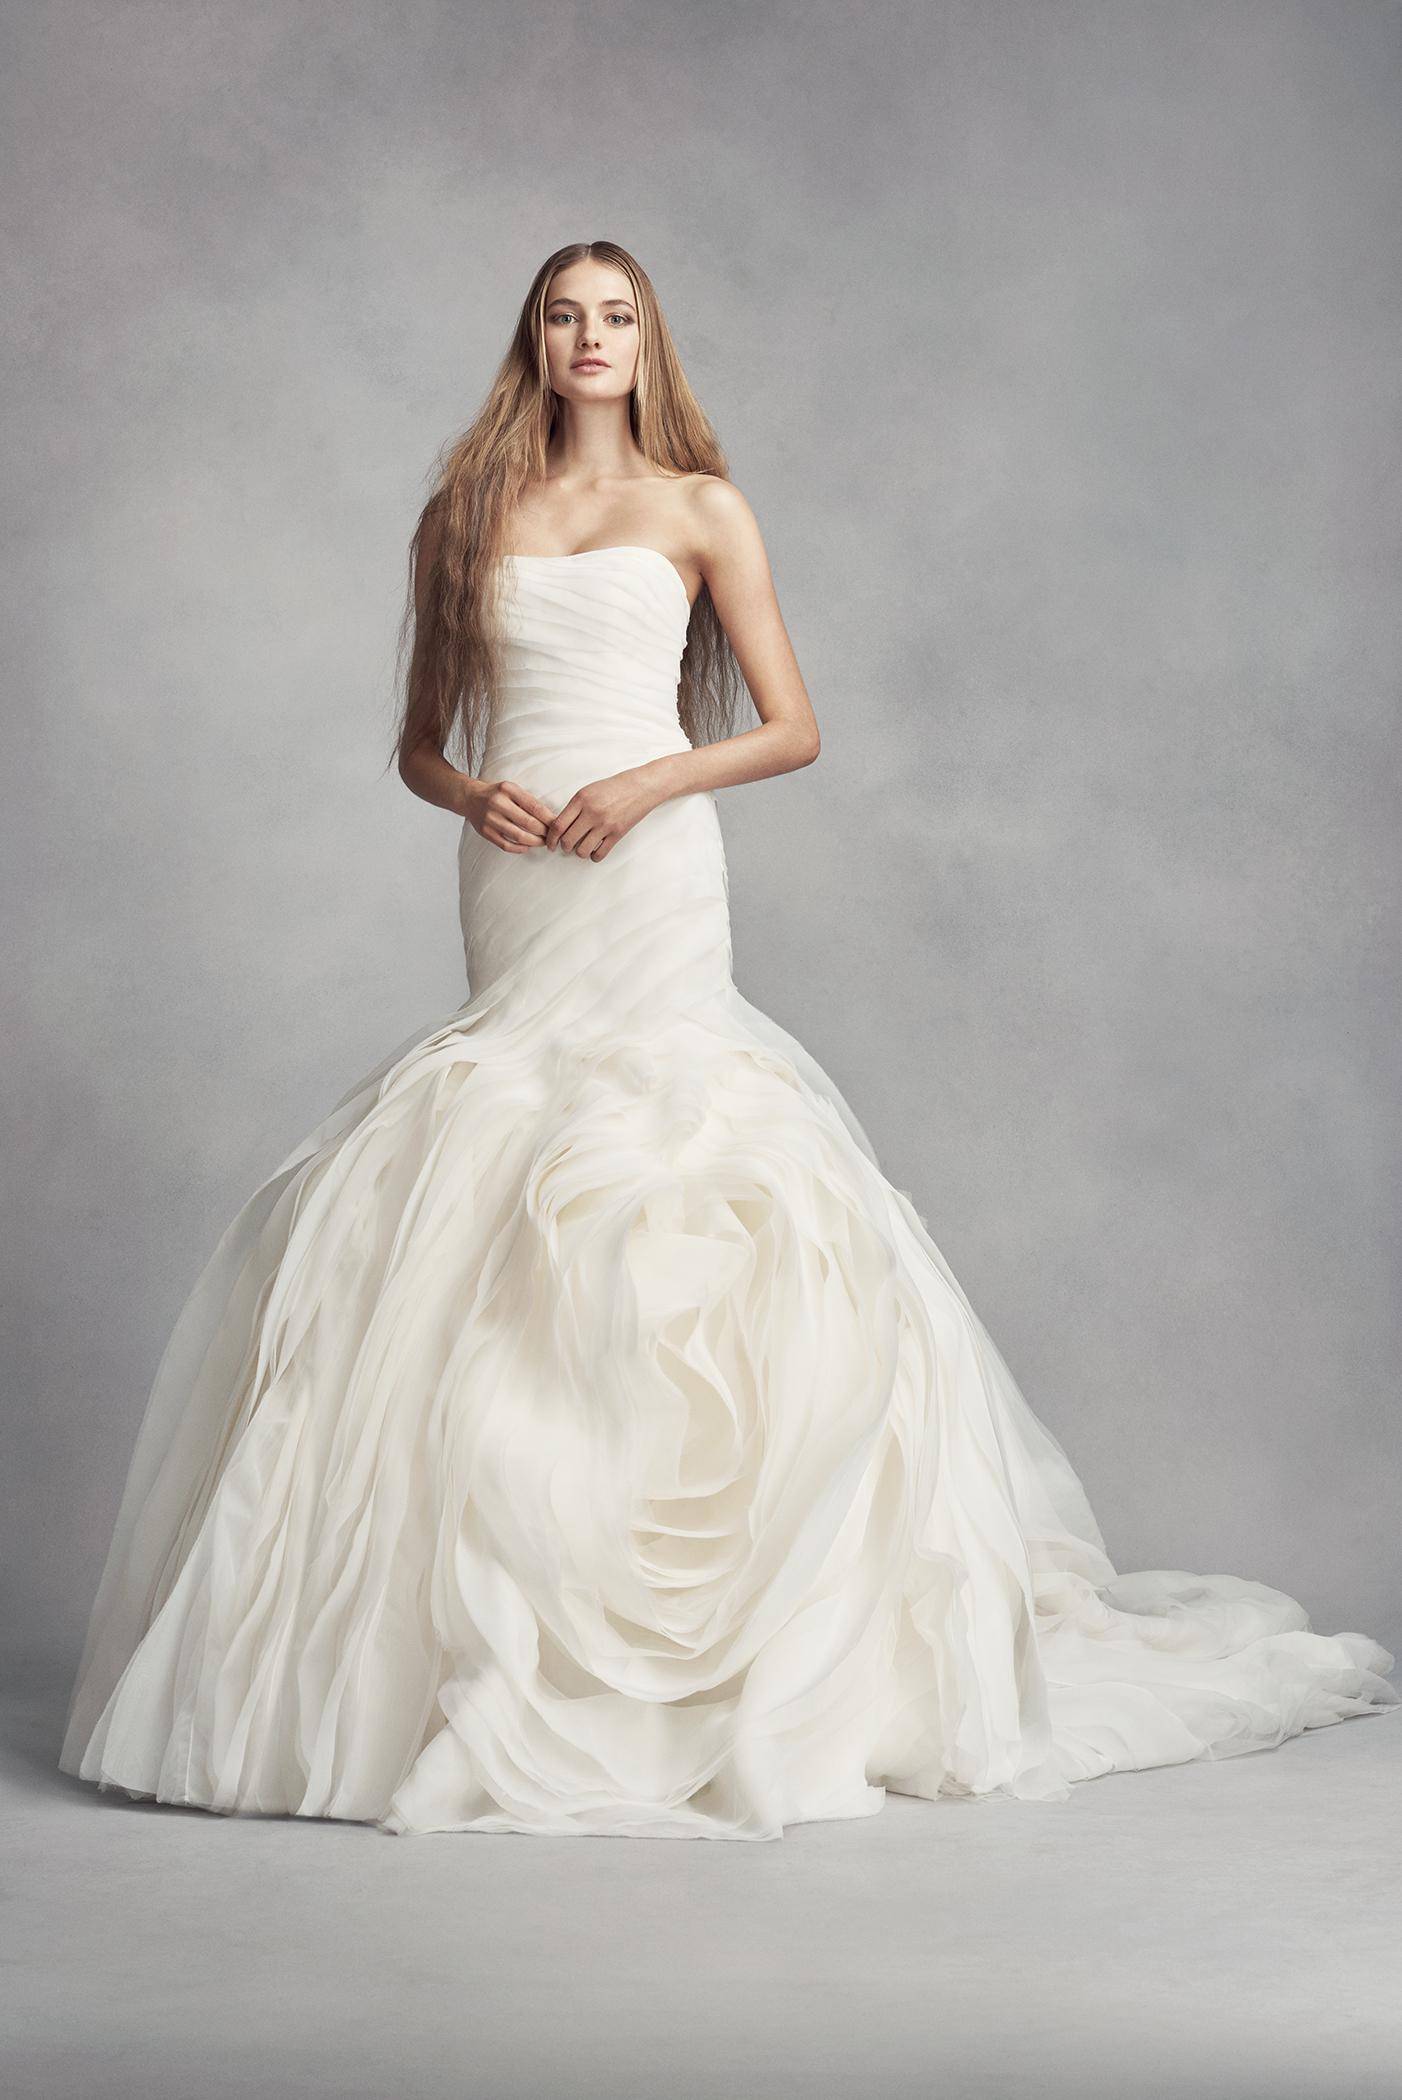 Вера вонг – свадебные платья от известного дизайнера